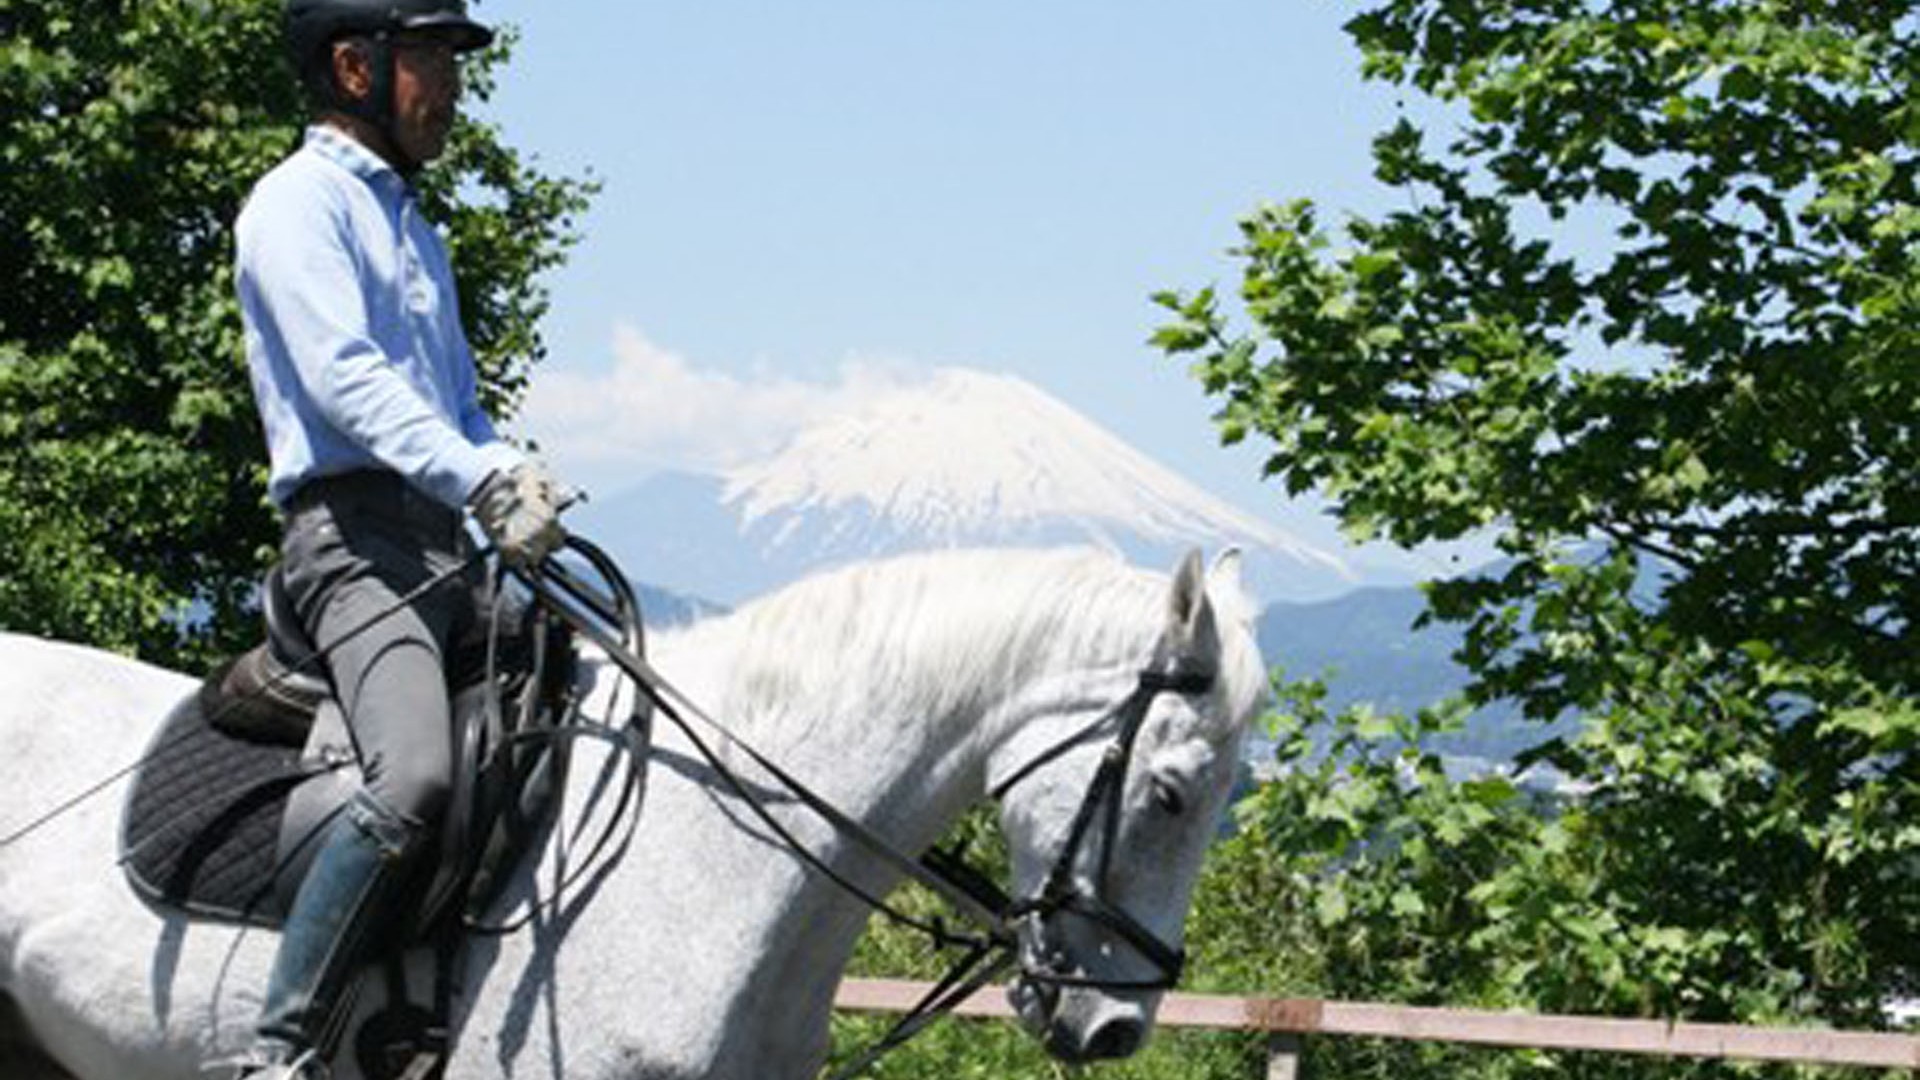 Câu lạc bộ cưỡi ngựa quốc tế Hatano